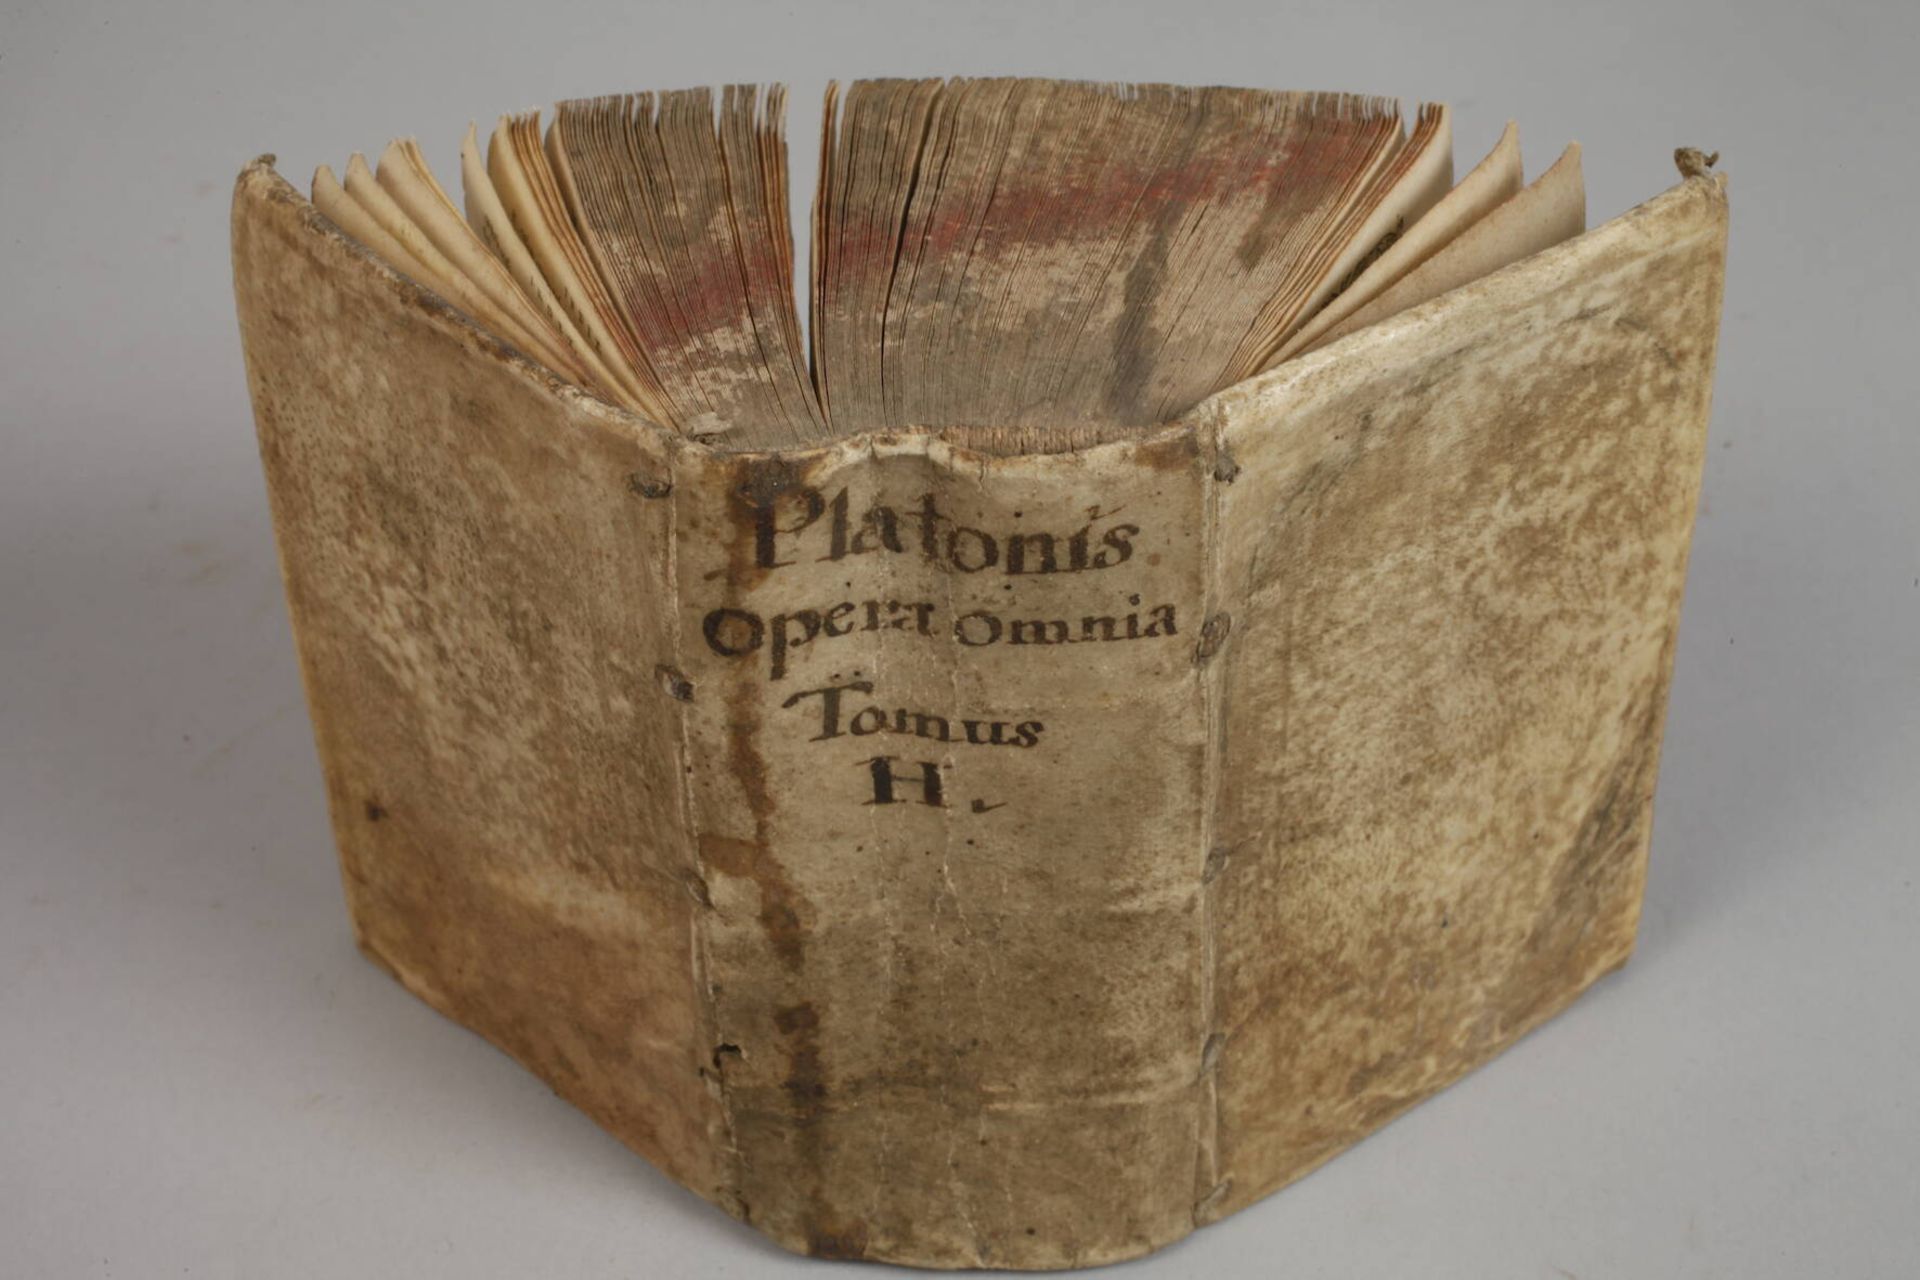 Divini Platonis Operum Omnium 1592 - Image 6 of 6